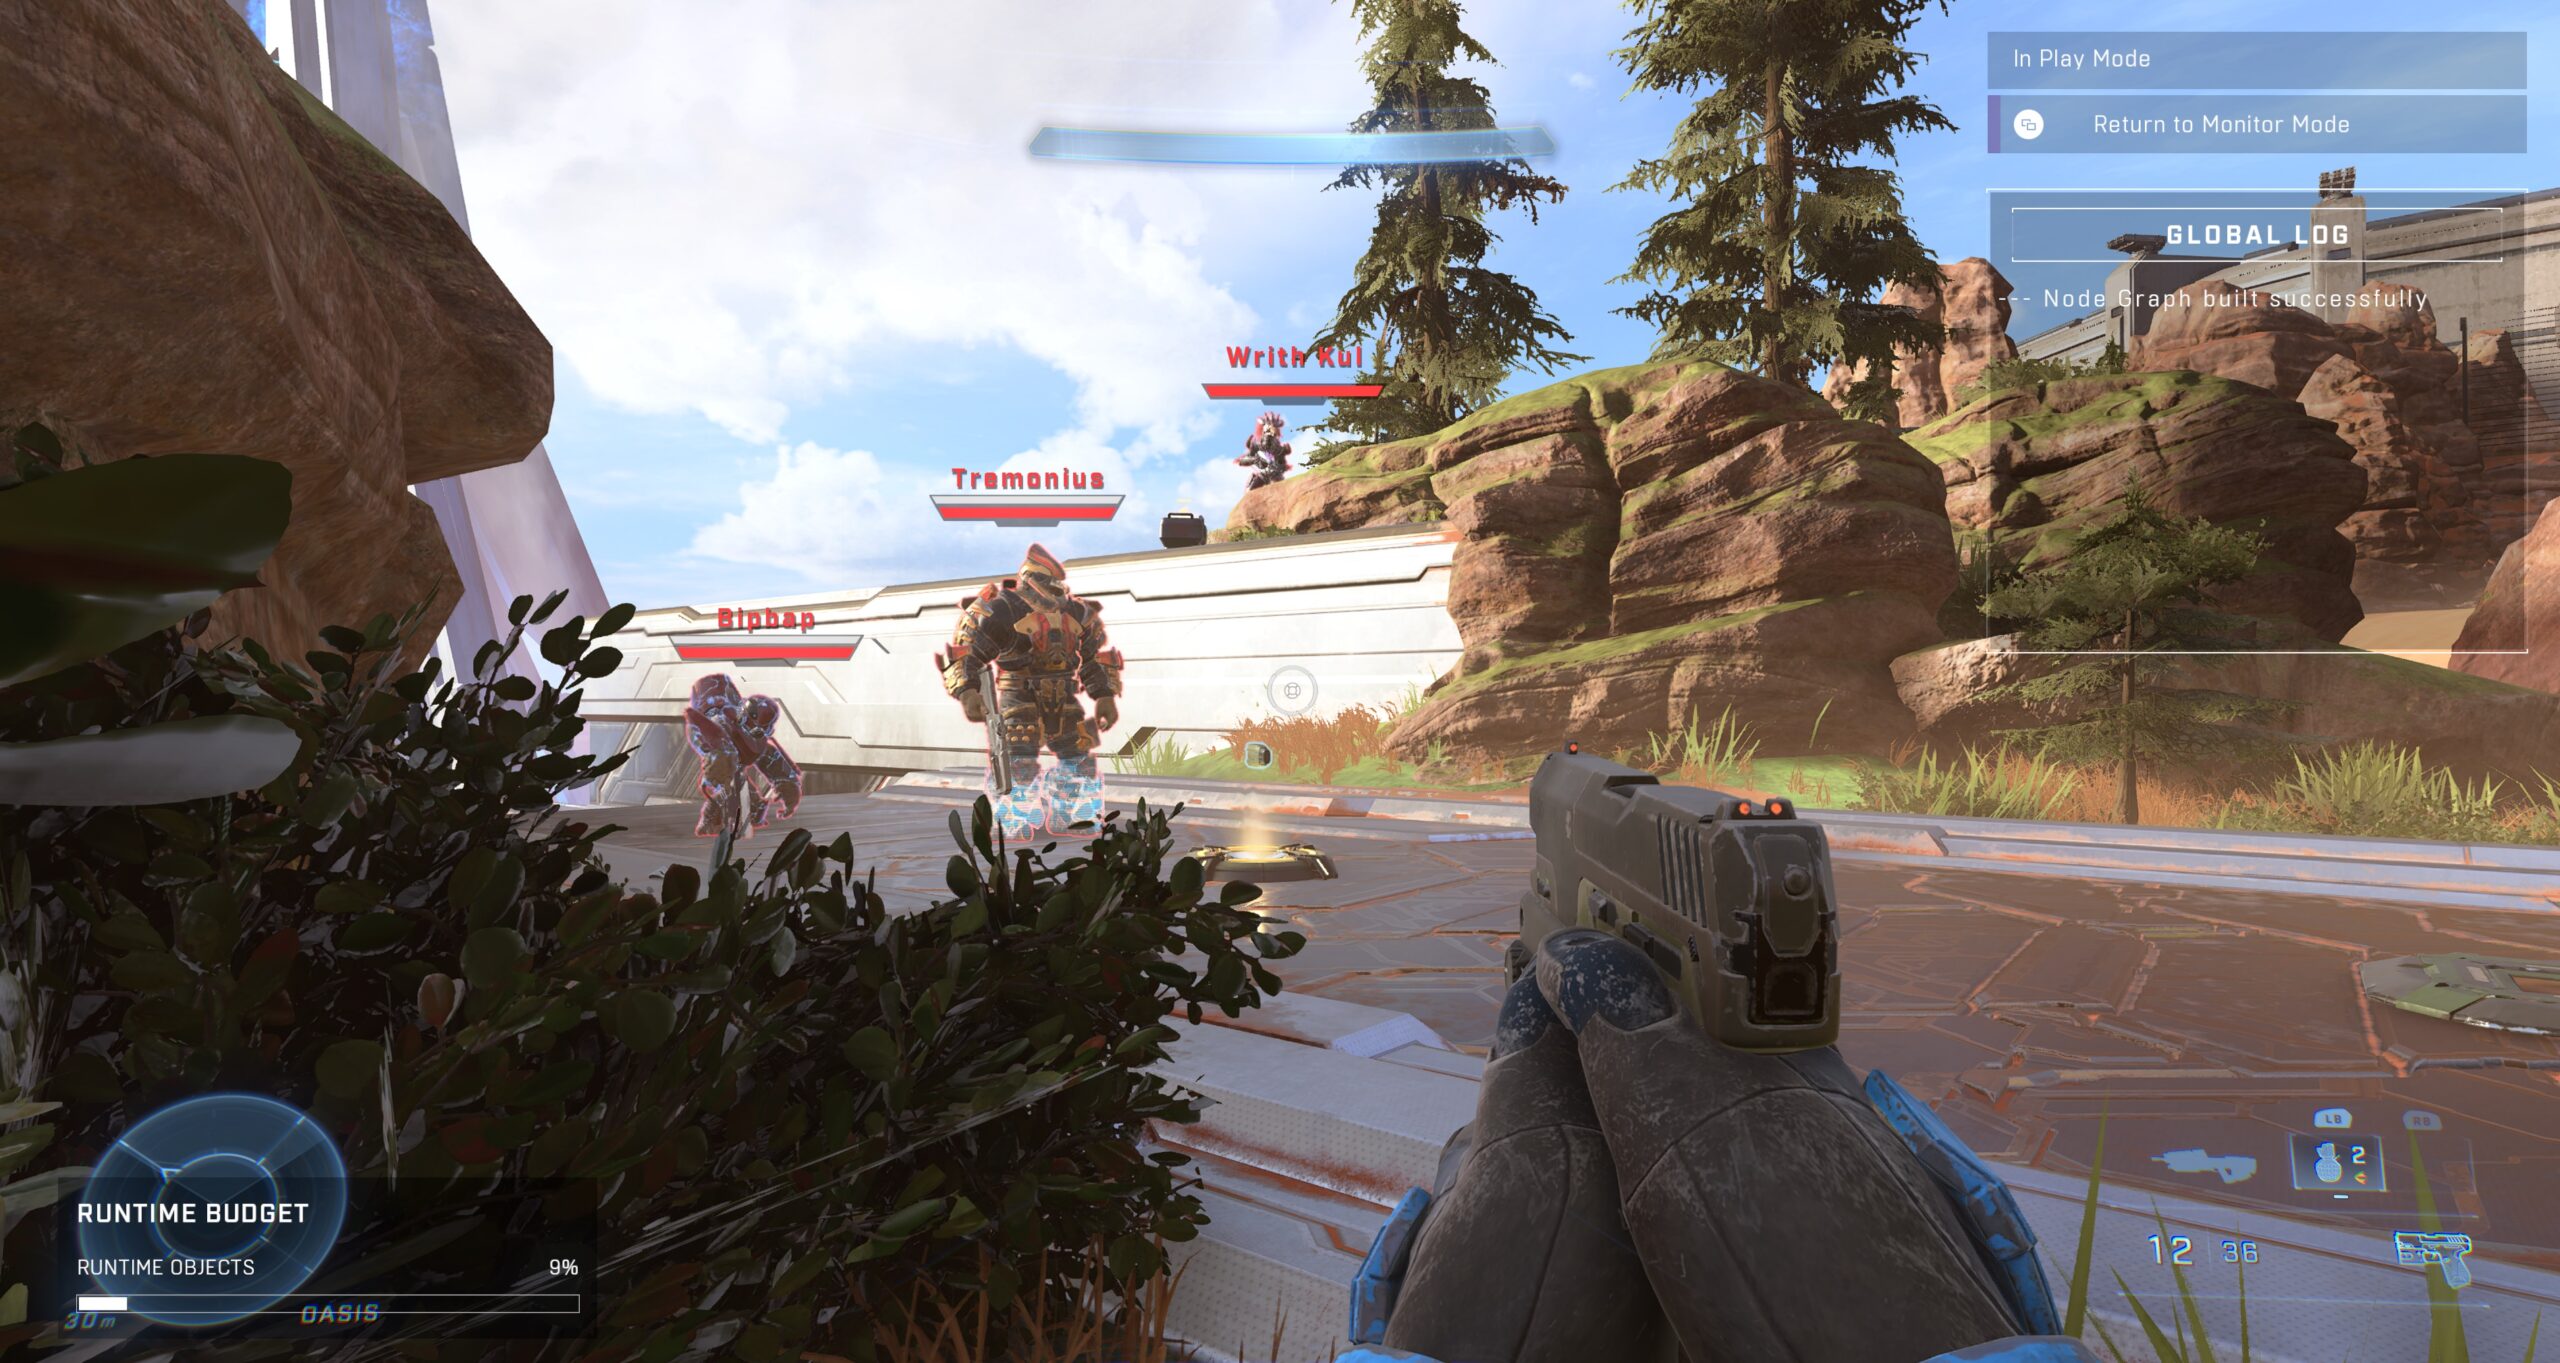 Στιγμιότυπο οθόνης Halo Infinite στόχων υψηλής αξίας (Bipbap, Tremonius, Writh Kul) που τοποθετήθηκαν στον χάρτη Oasis in Forge